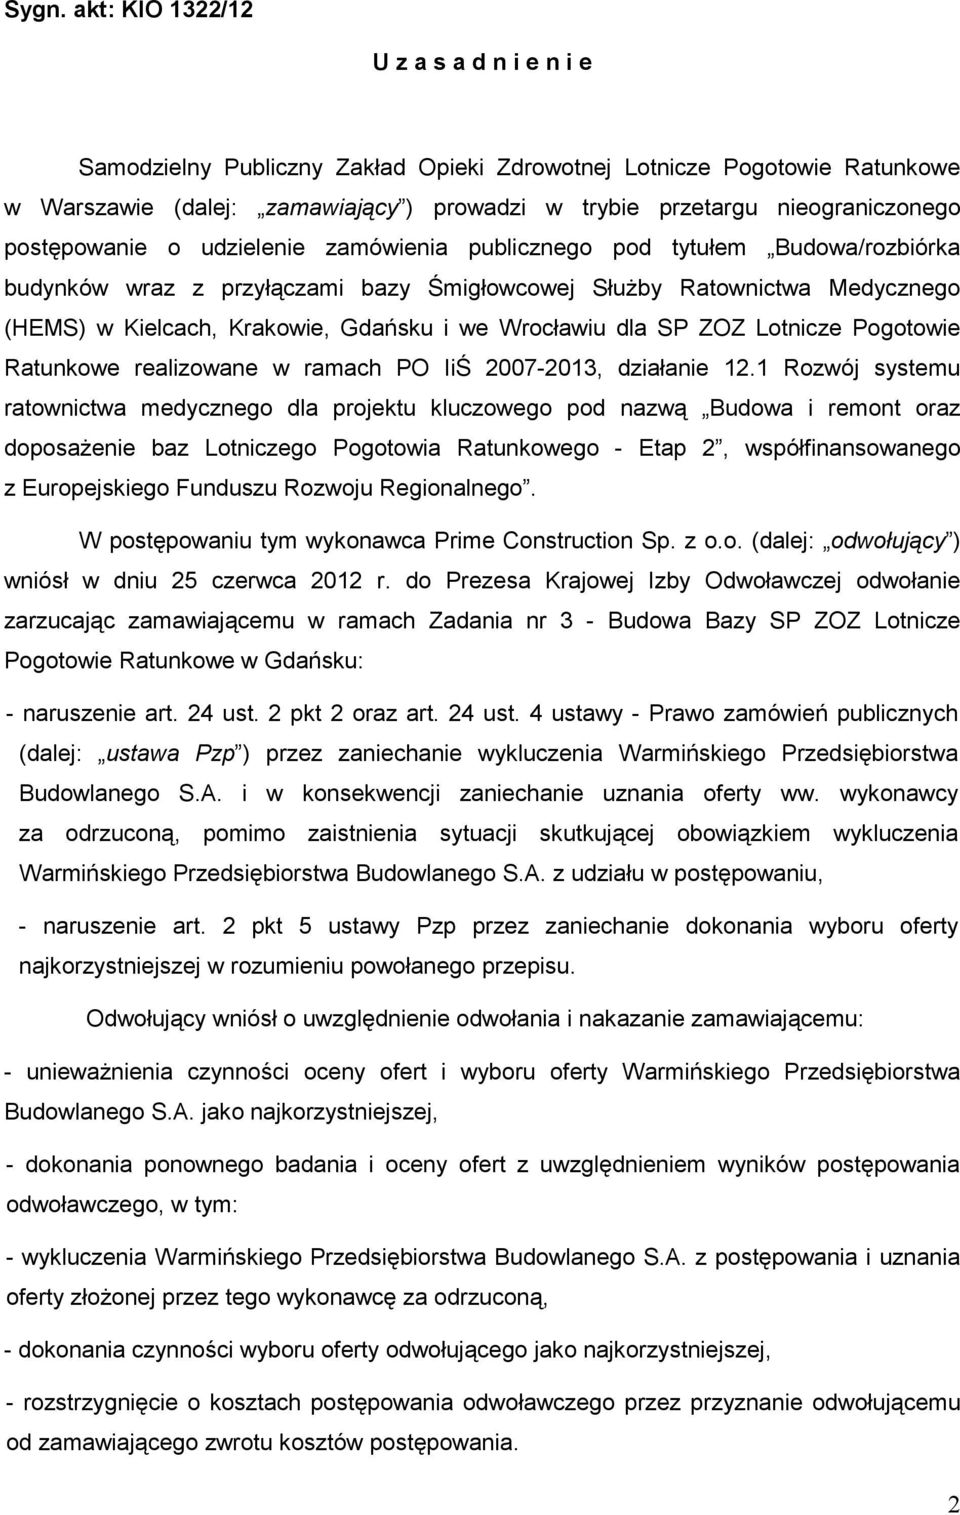 Gdańsku i we Wrocławiu dla SP ZOZ Lotnicze Pogotowie Ratunkowe realizowane w ramach PO IiŚ 2007-2013, działanie 12.